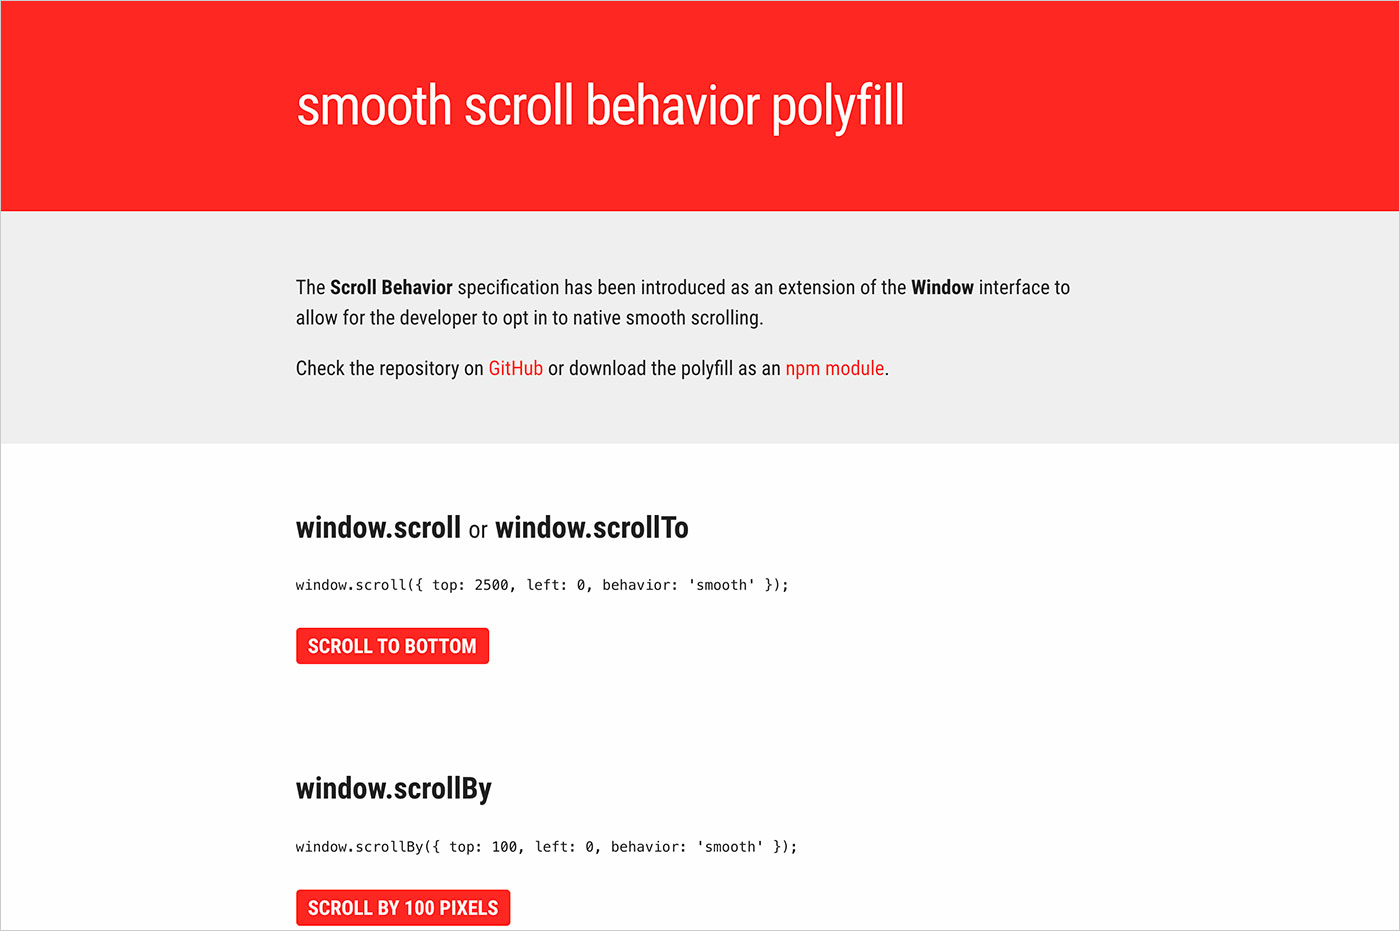 Smooth Scroll behavior polyfillウェブサイトの画面キャプチャ画像